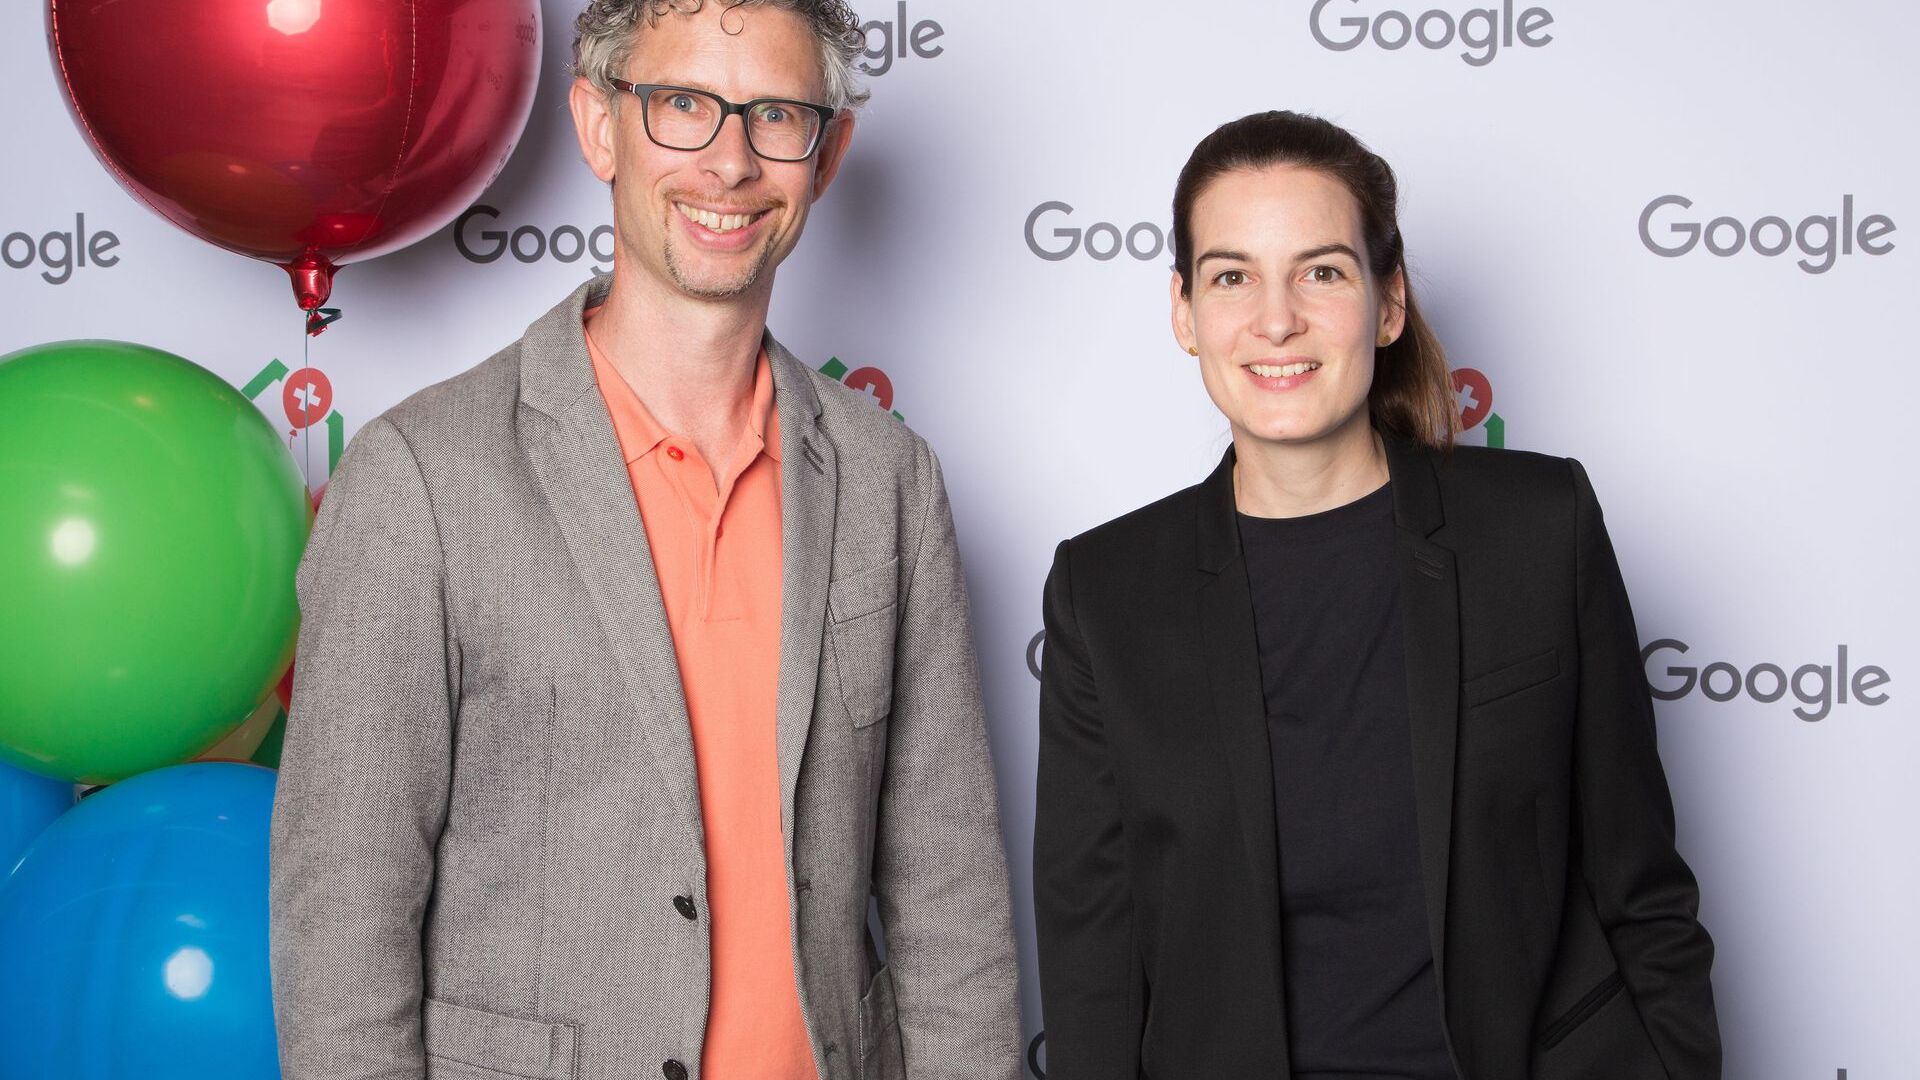 ساموئل لیزر و پیا د کارلی، تیم رسانه ای گوگل سوئیس، در افتتاحیه رسمی پردیس جدید Google Europaallee در زوریخ در 27 ژوئن 2022 شرکت کردند.